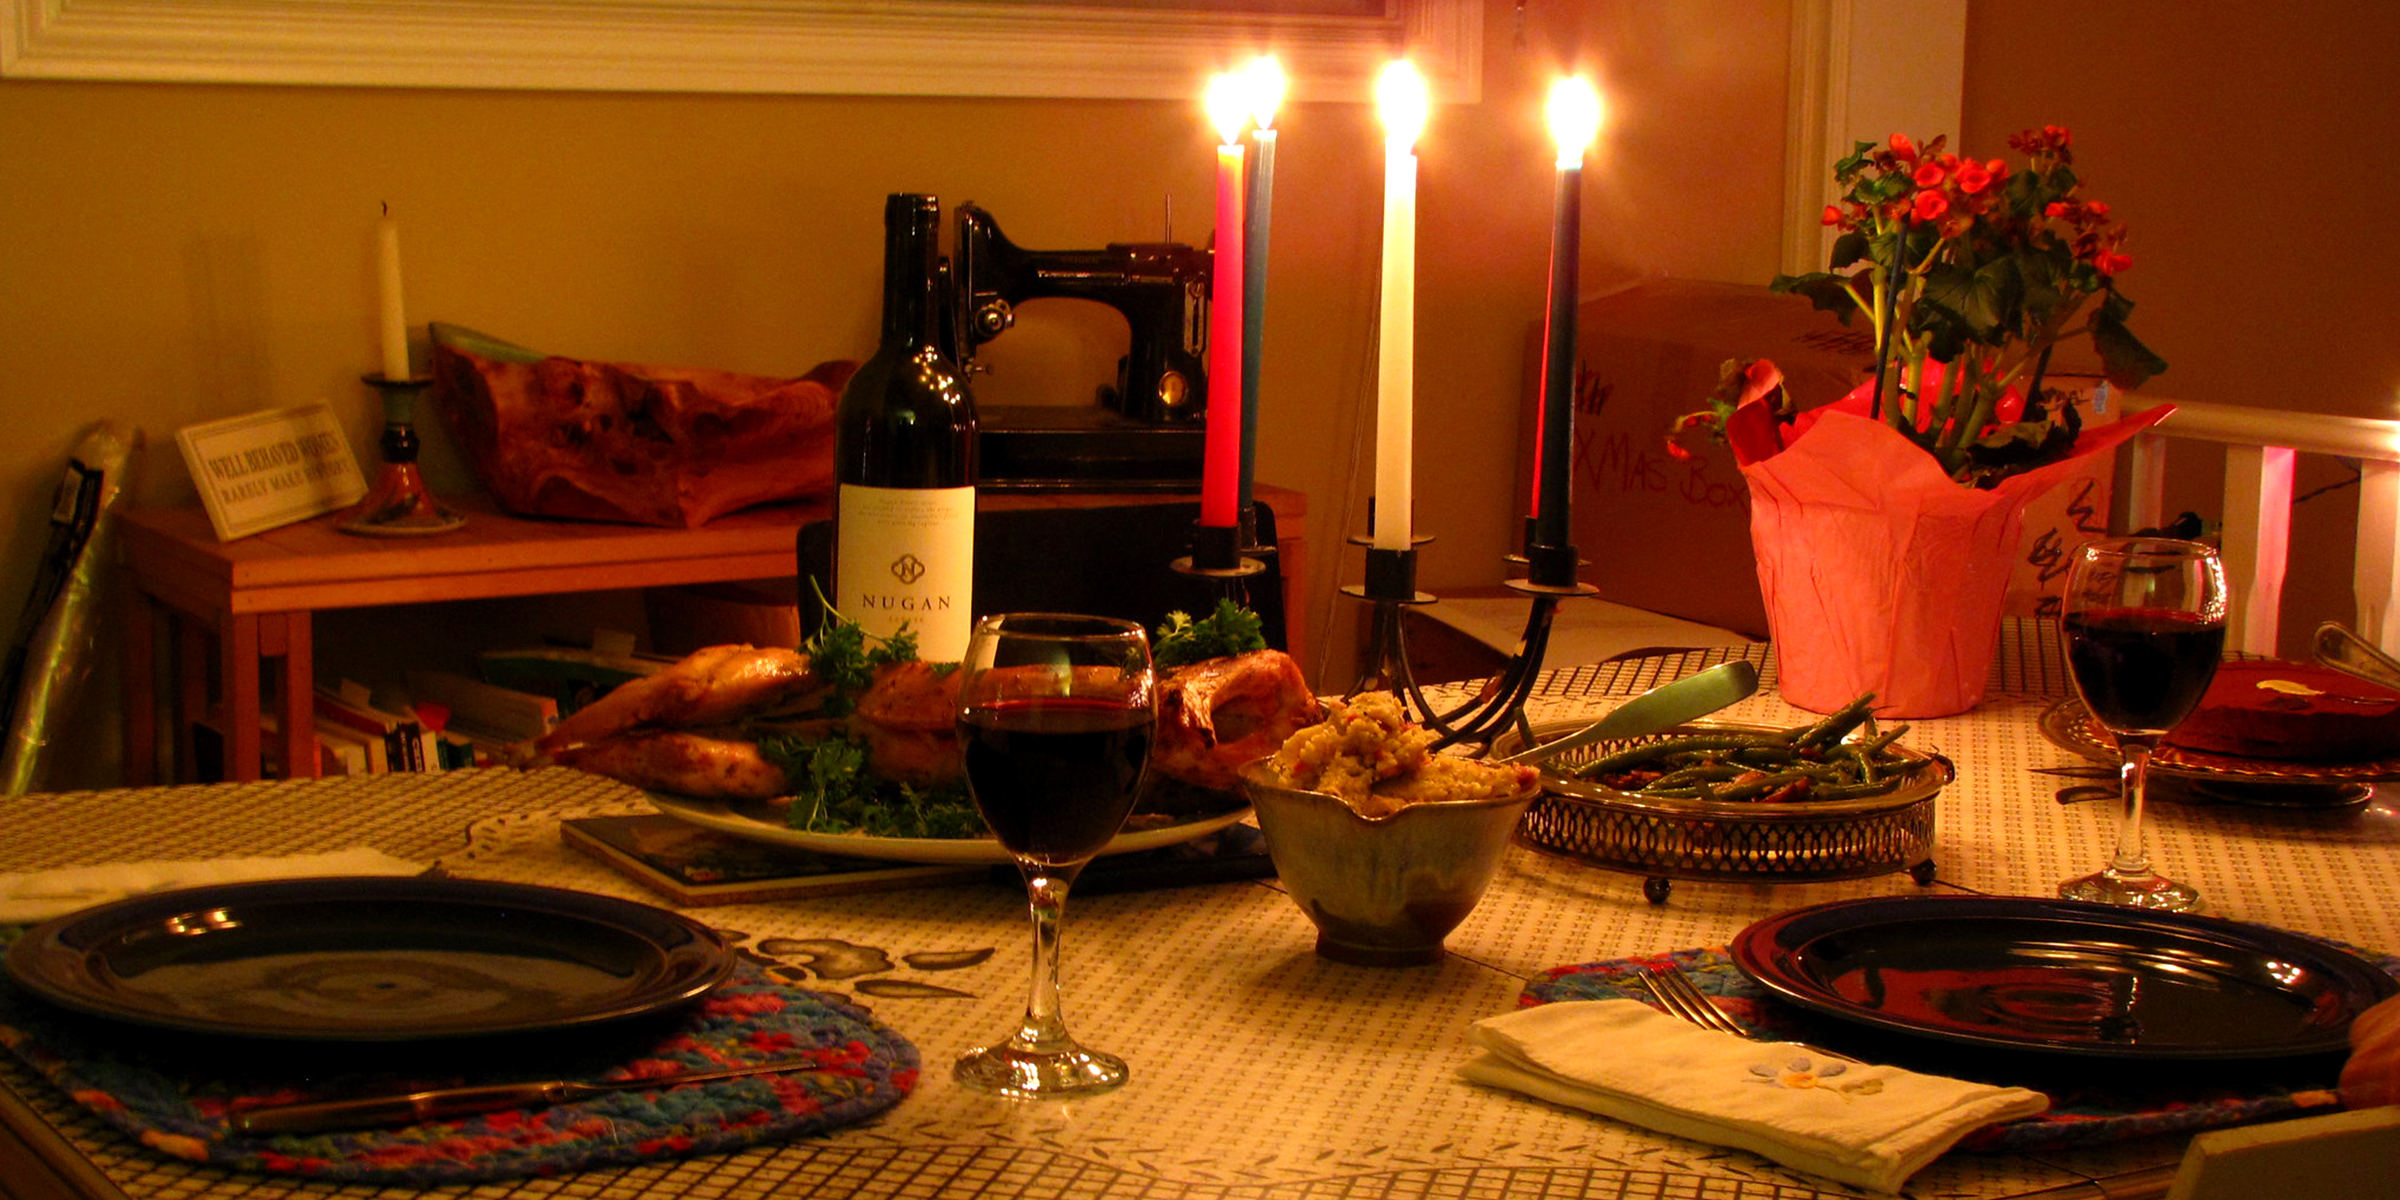 Una cena romántica | Foto: Flickr.com/eileenmak (CC BY 2.0)